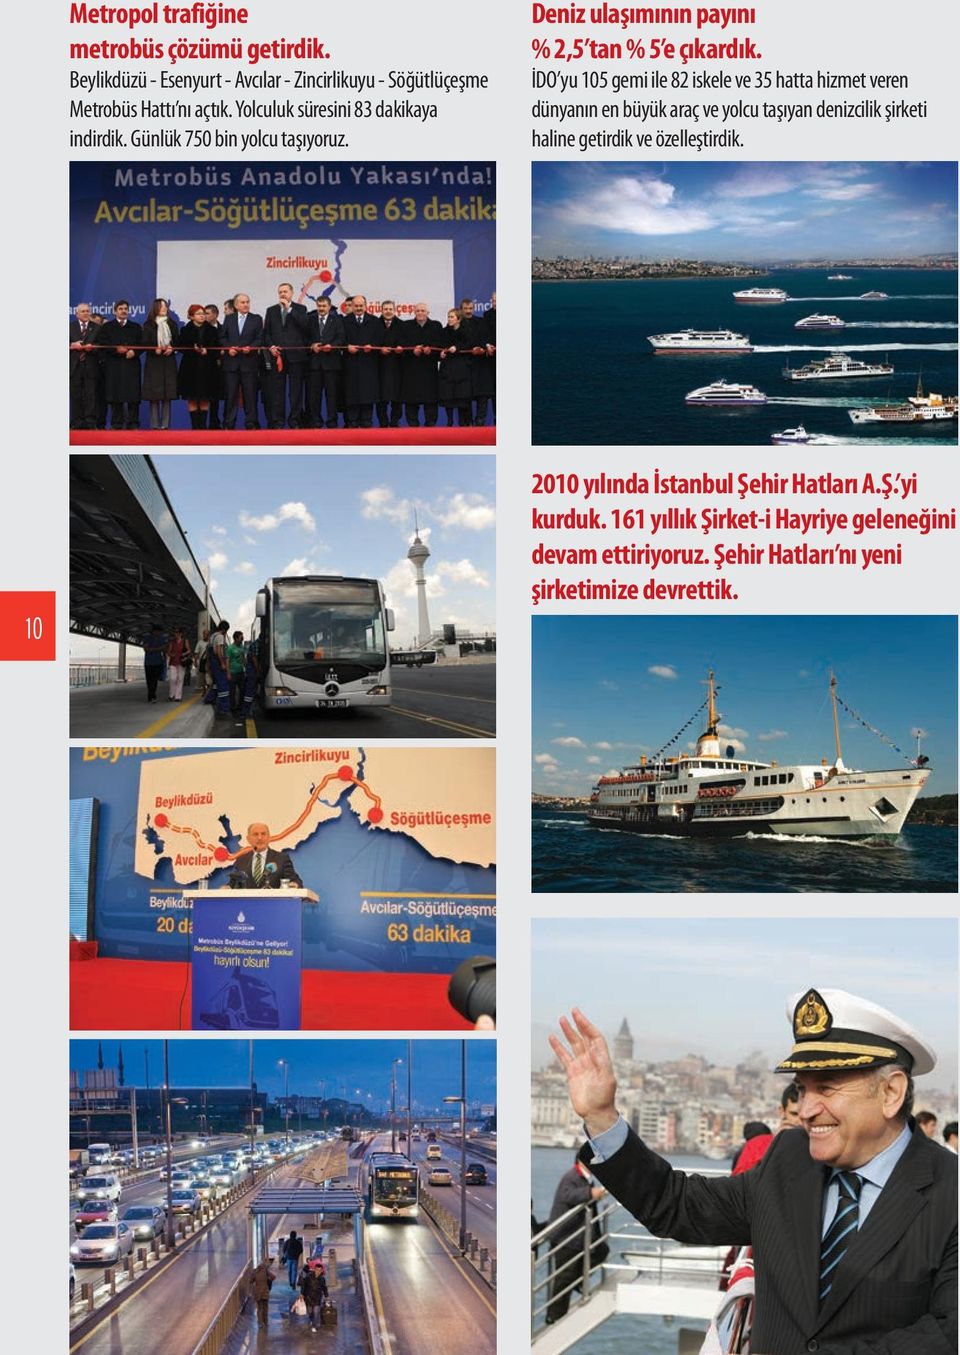 İDO yu 105 gemi ile 82 iskele ve 35 hatta hizmet veren dünyanın en büyük araç ve yolcu taşıyan denizcilik şirketi haline getirdik ve